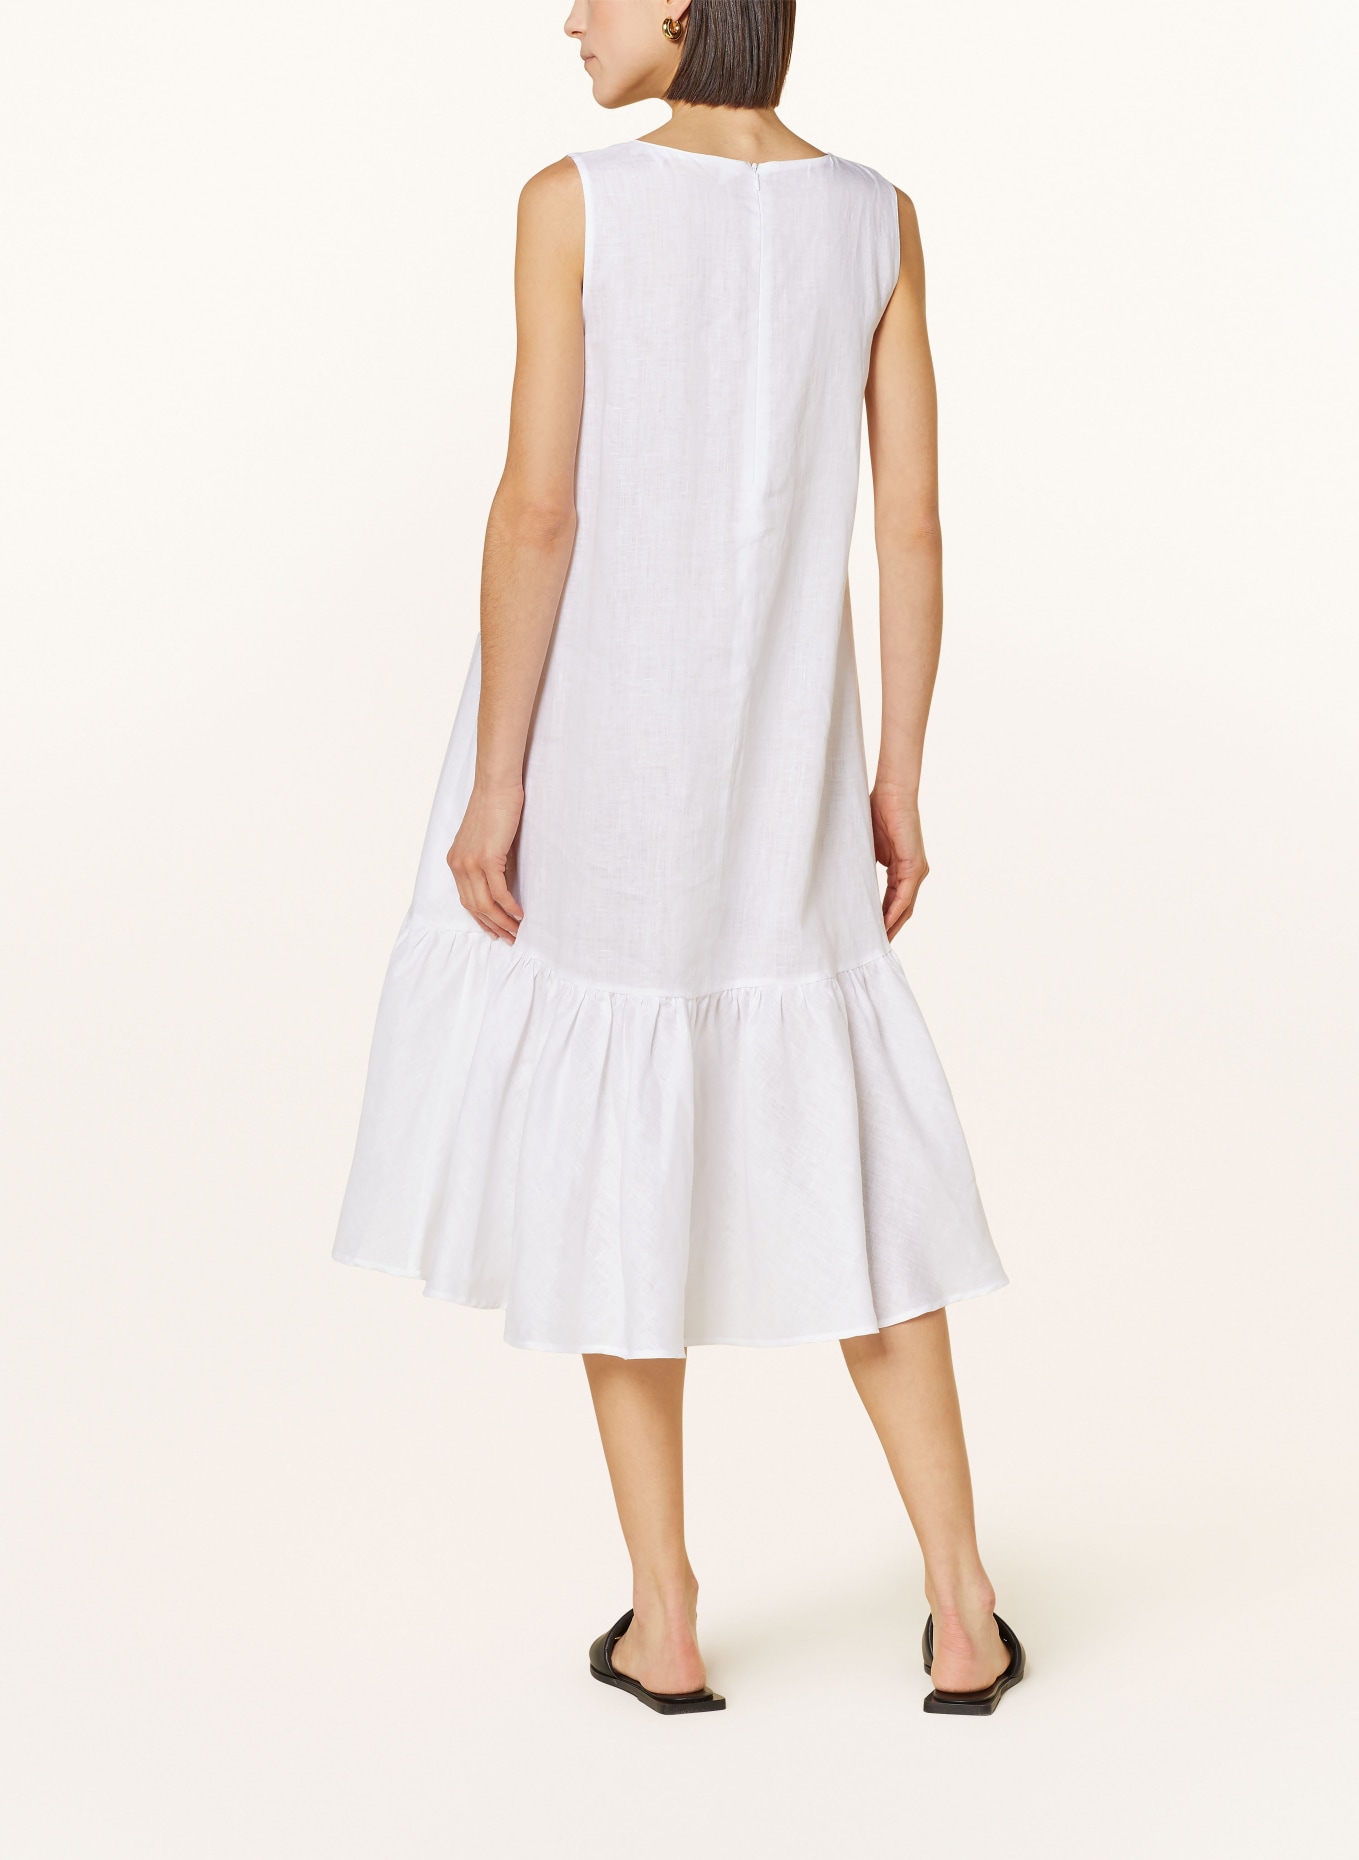 ROBERT FRIEDMAN Linen dress KARENL, Color: WHITE (Image 3)